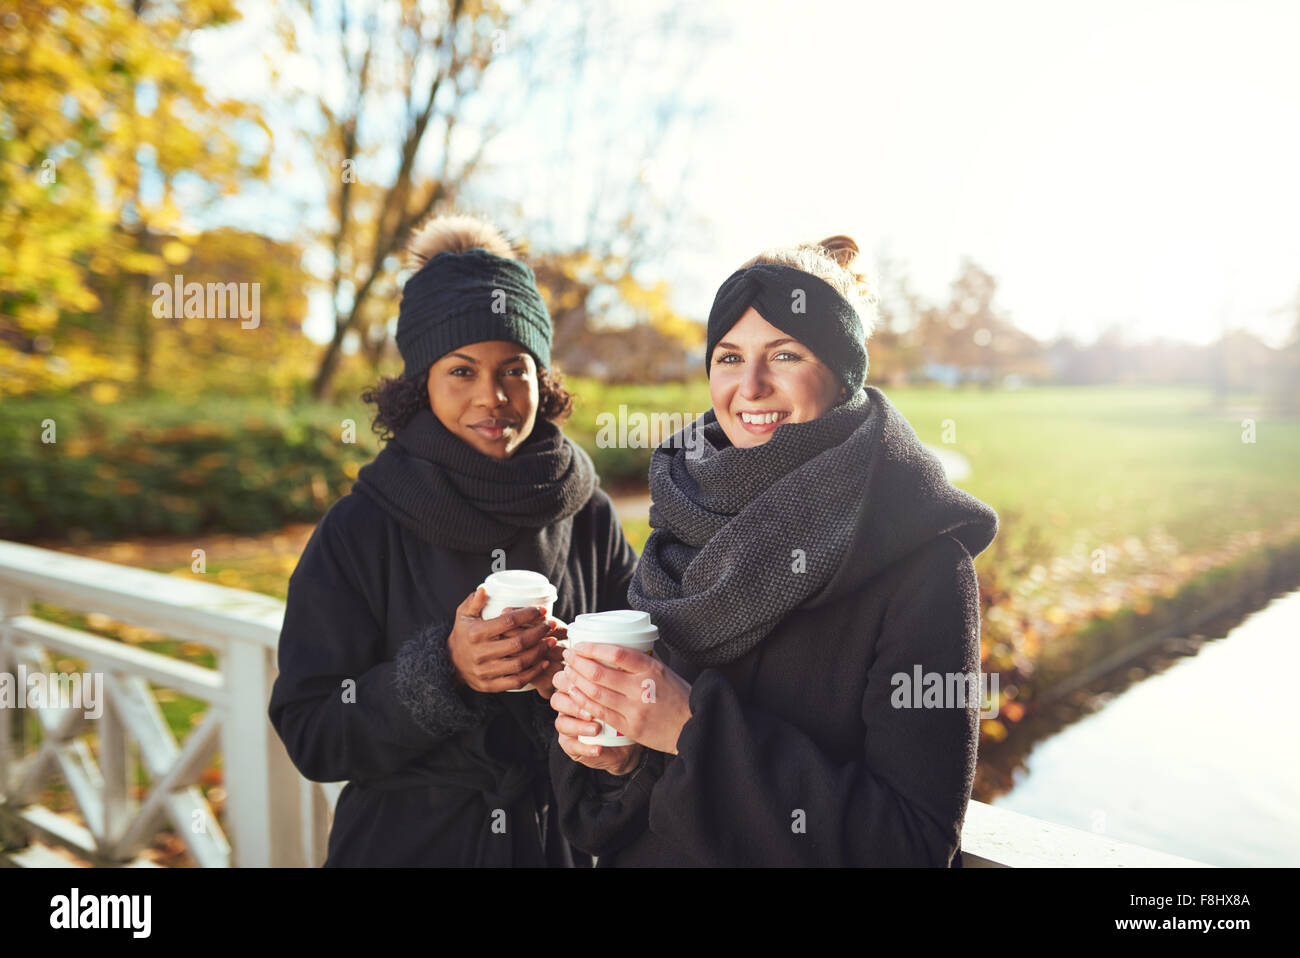 Deux jeunes femmes se tenant debout sur le pont et holding coffee to go, smiling Banque D'Images